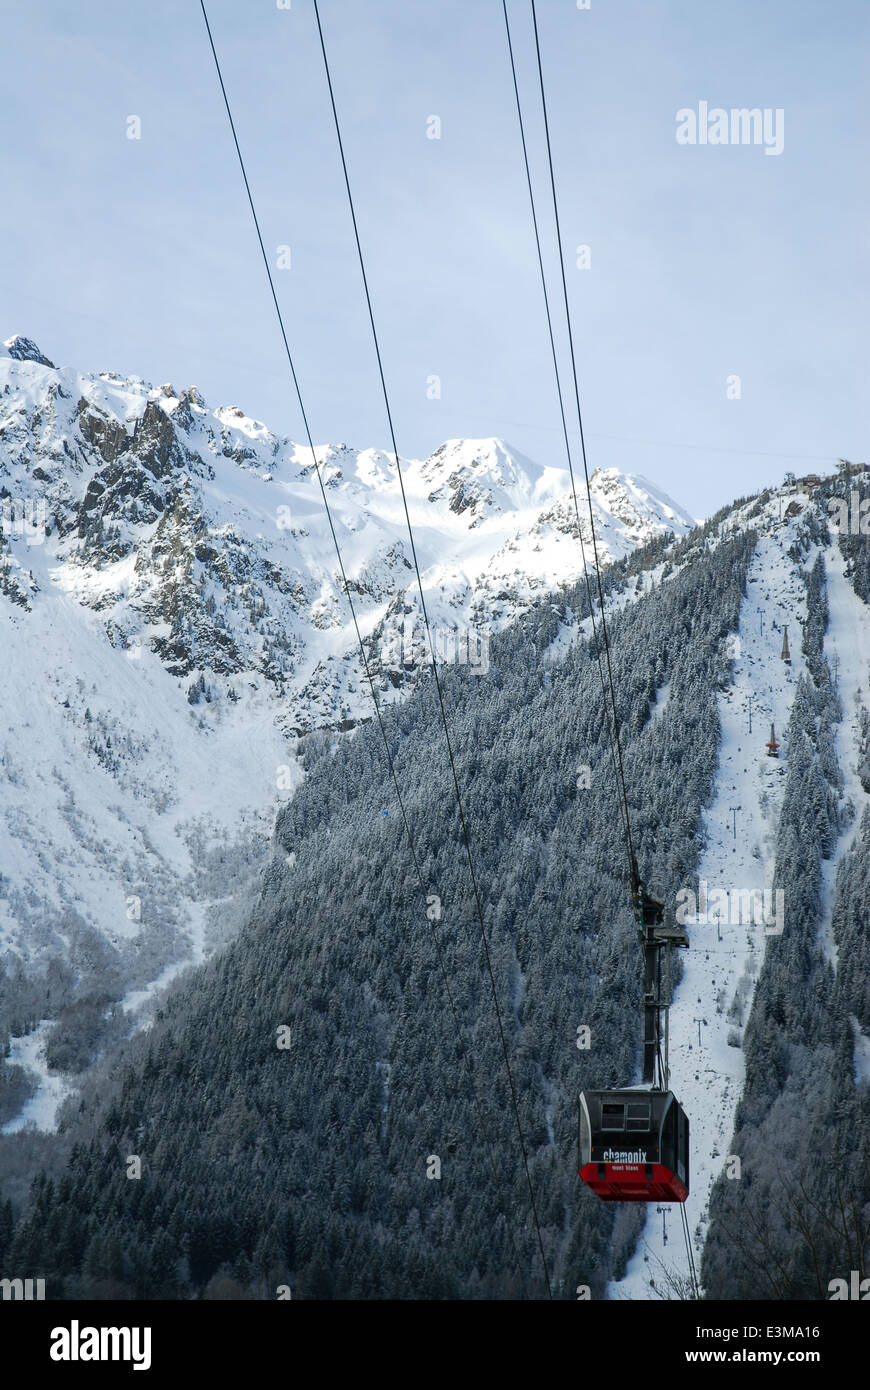 La funivia di Aiguille du Midi a Chamonix, Francia: la massima ascesa verticale cavo auto in tutto il mondo. Foto Stock